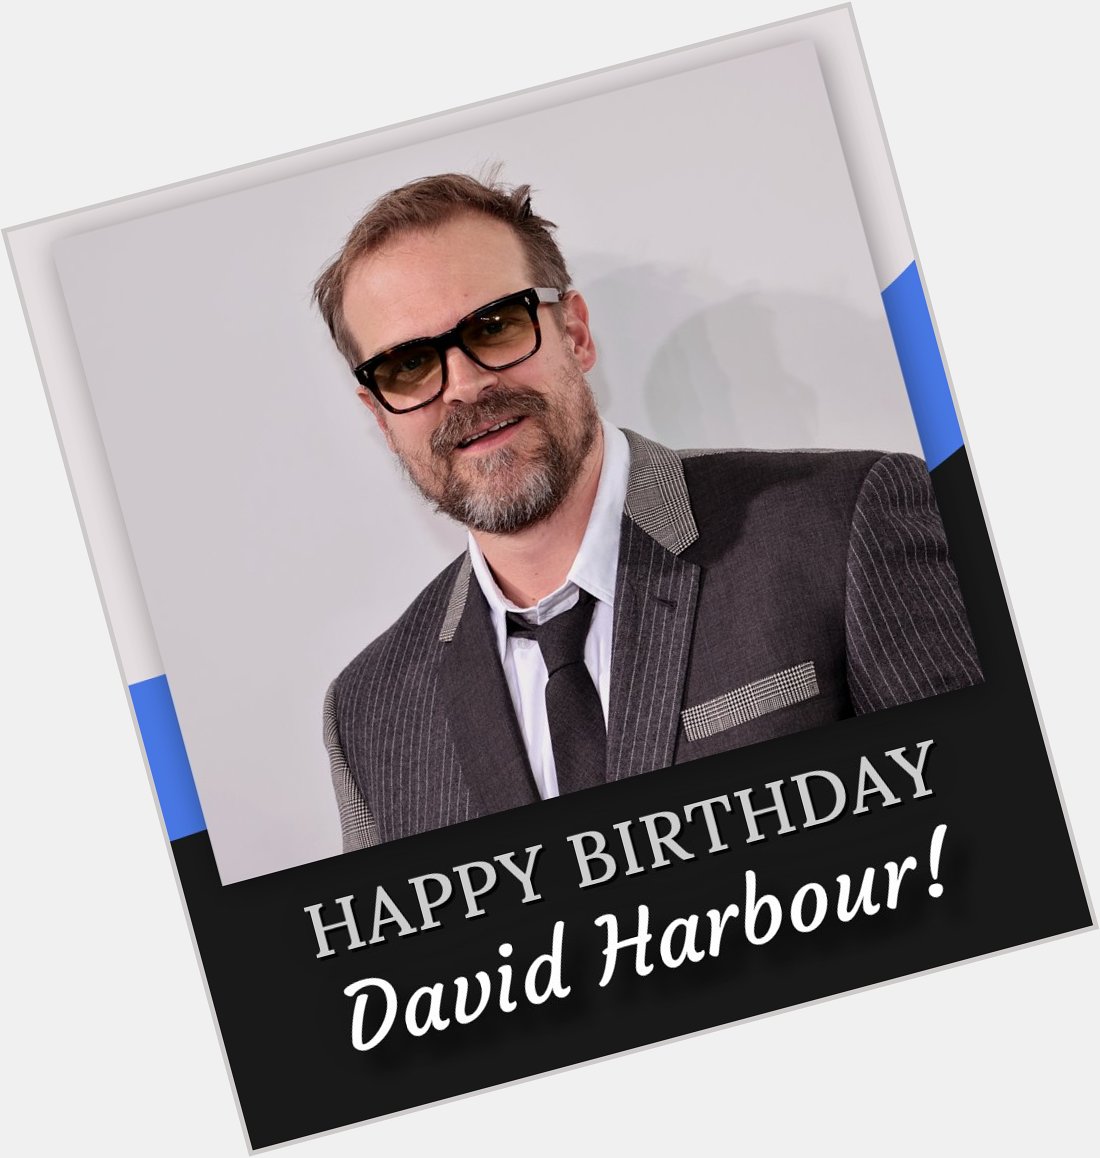 Happy birthday, David Harbour! 